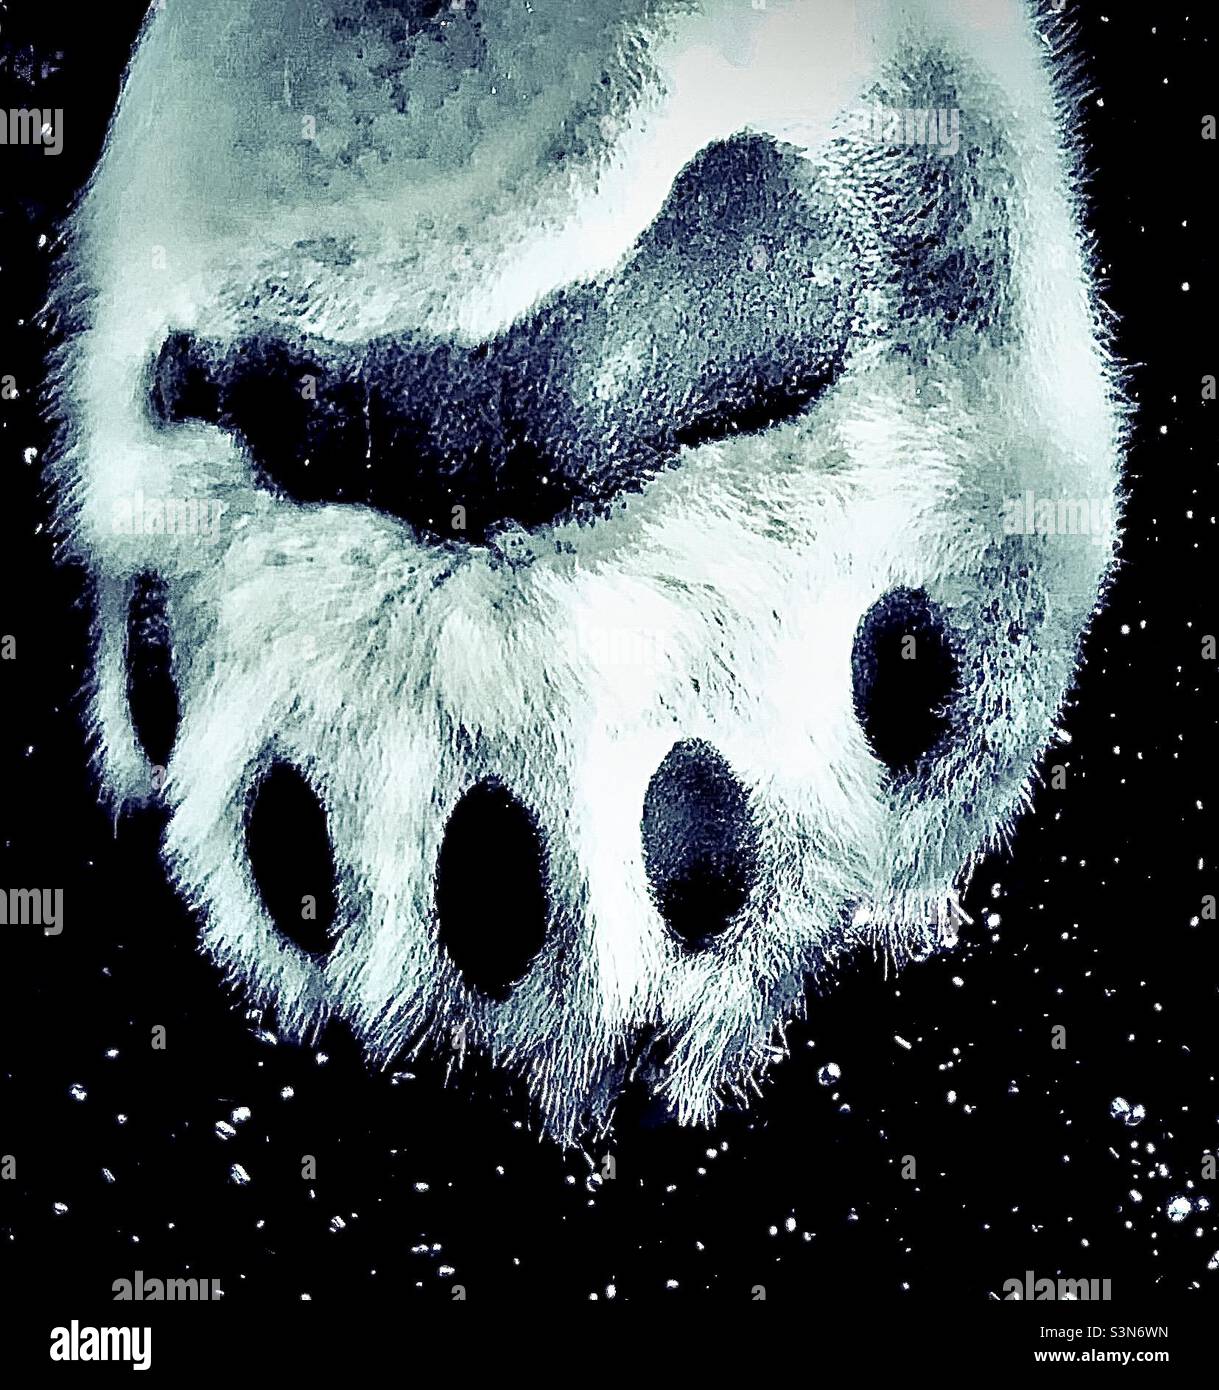 Nahaufnahme der Pfote und Zehen eines schwimmenden Eisbären in hoher Auflösung, umgeben von Wasserblasen Stockfoto